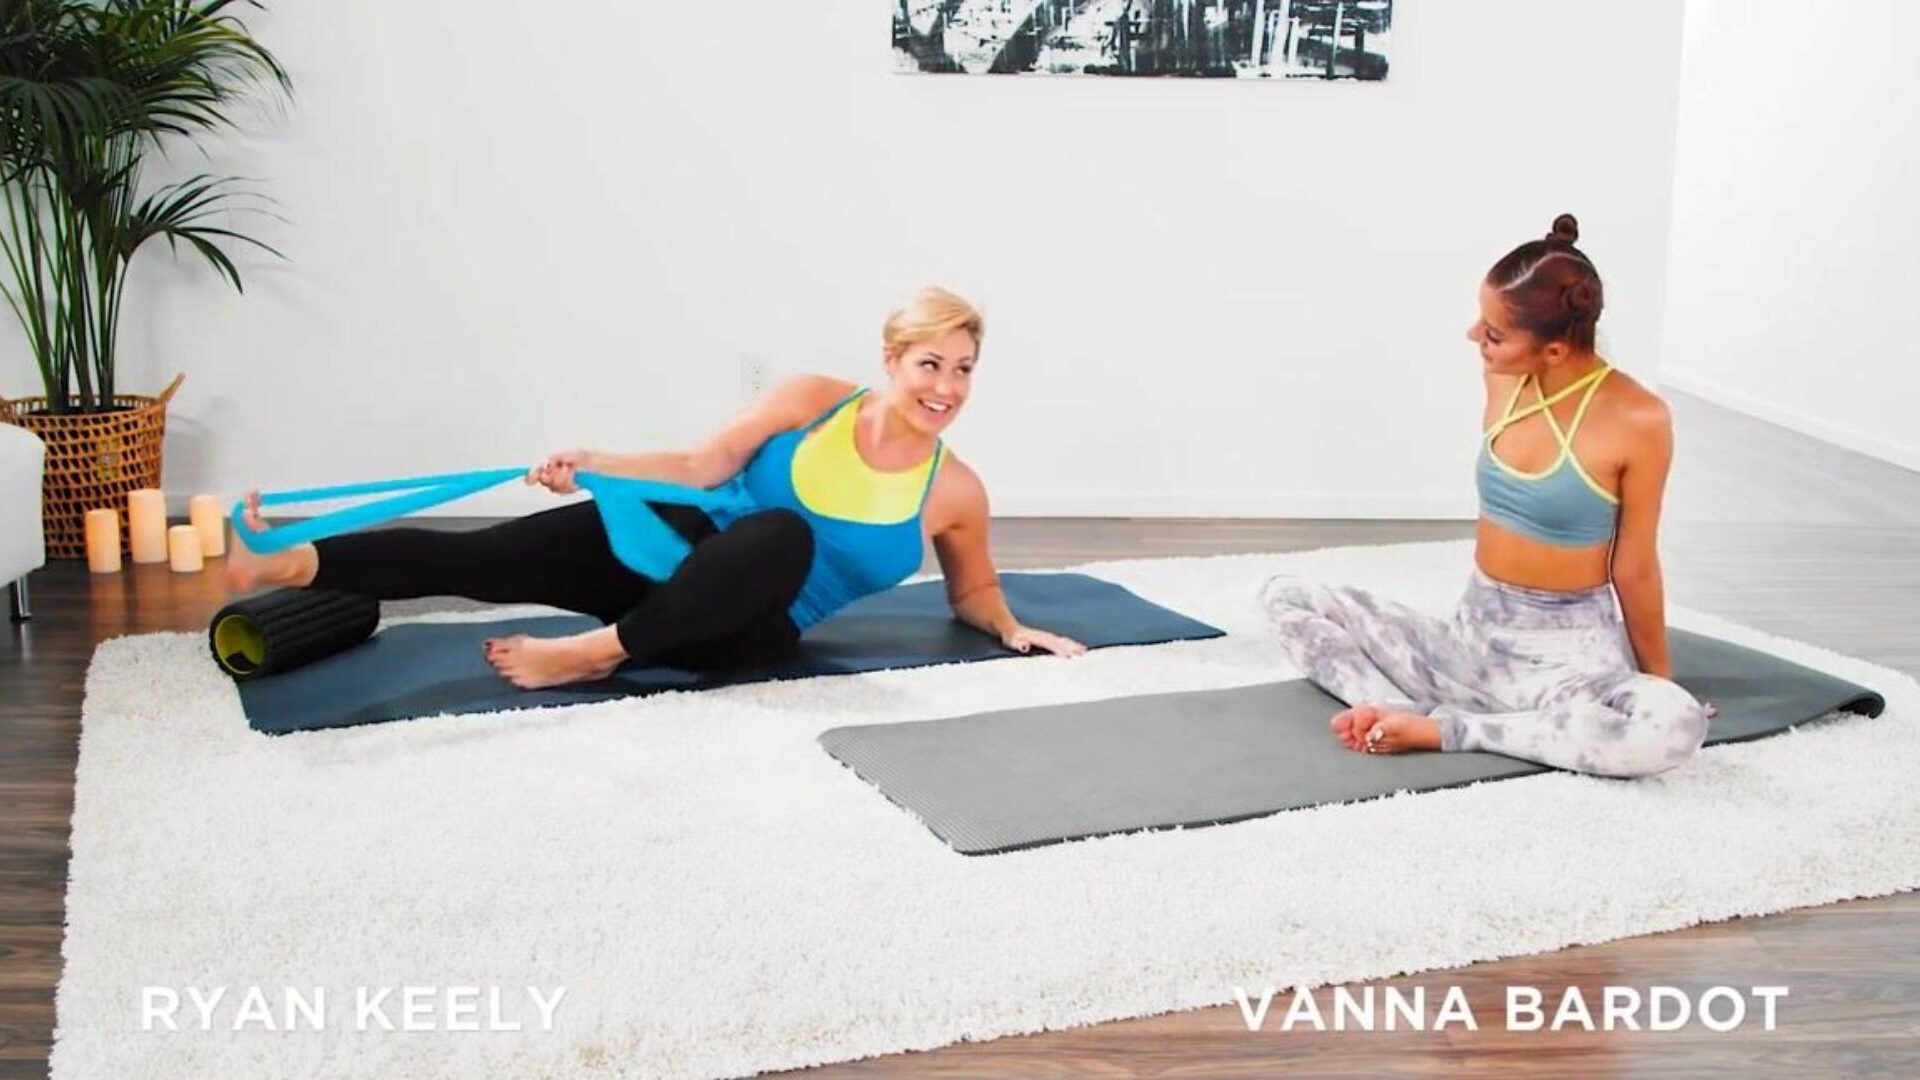 vanna bardot heeft een vingerzetting yoga training bij ryan keely vanna bardot en ryan keely